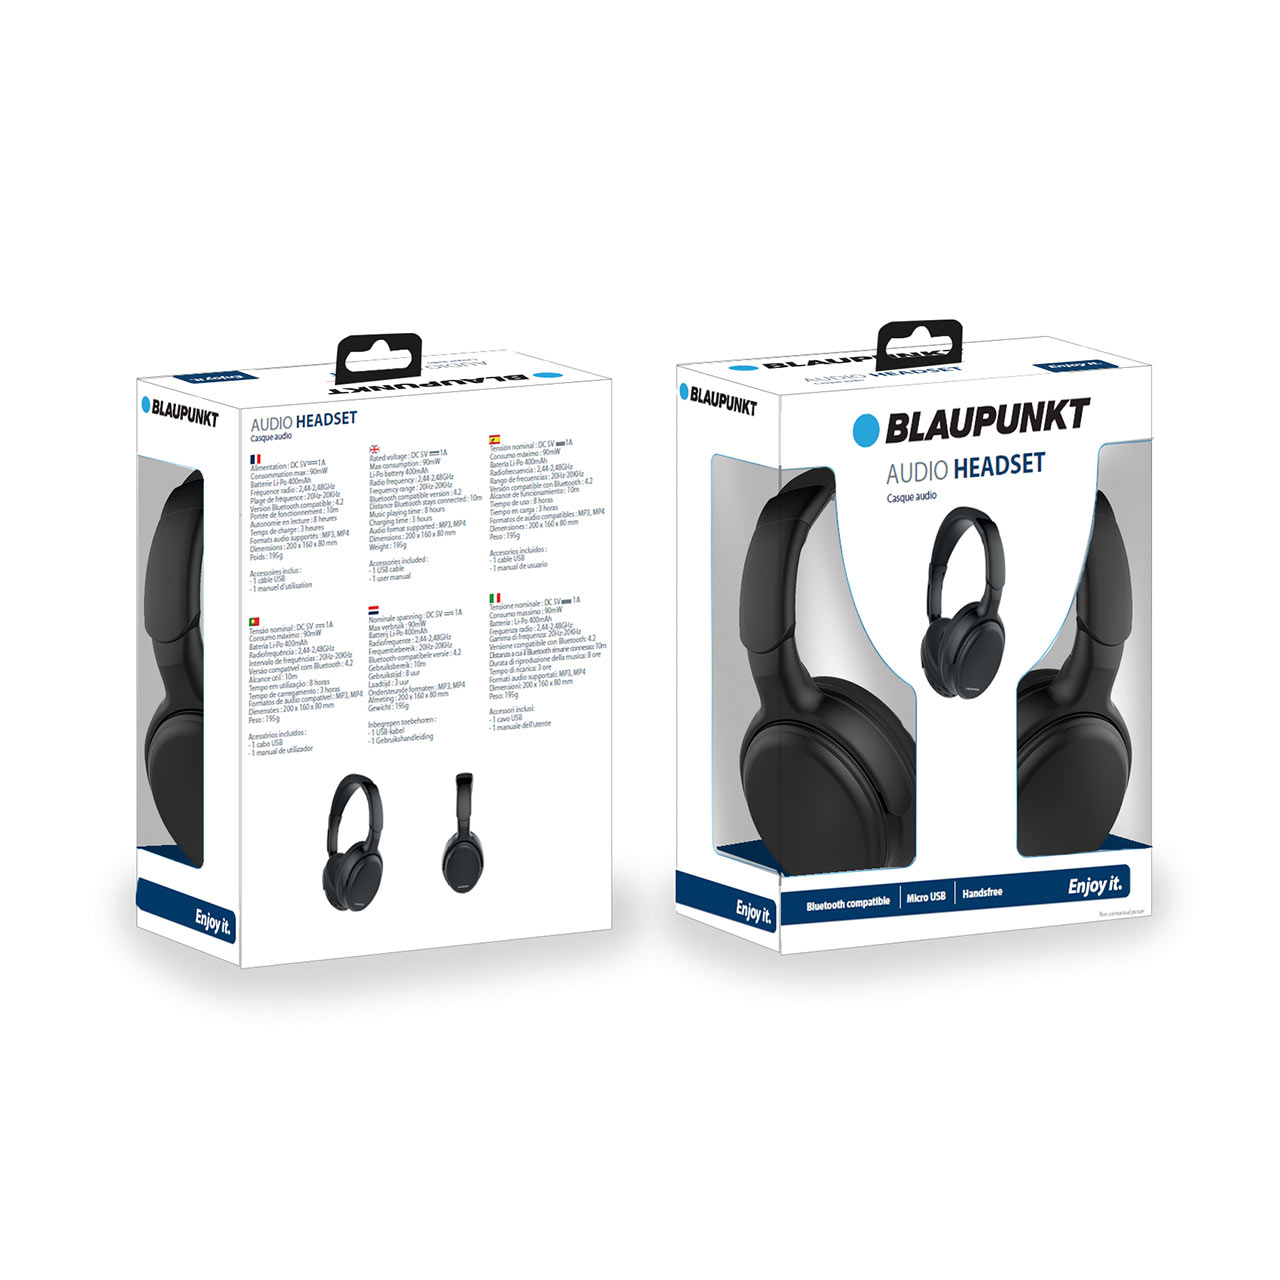 Geplooid paperback Europa Blaupunkt Bluetooth Audio Headset - Willsmer Wagg